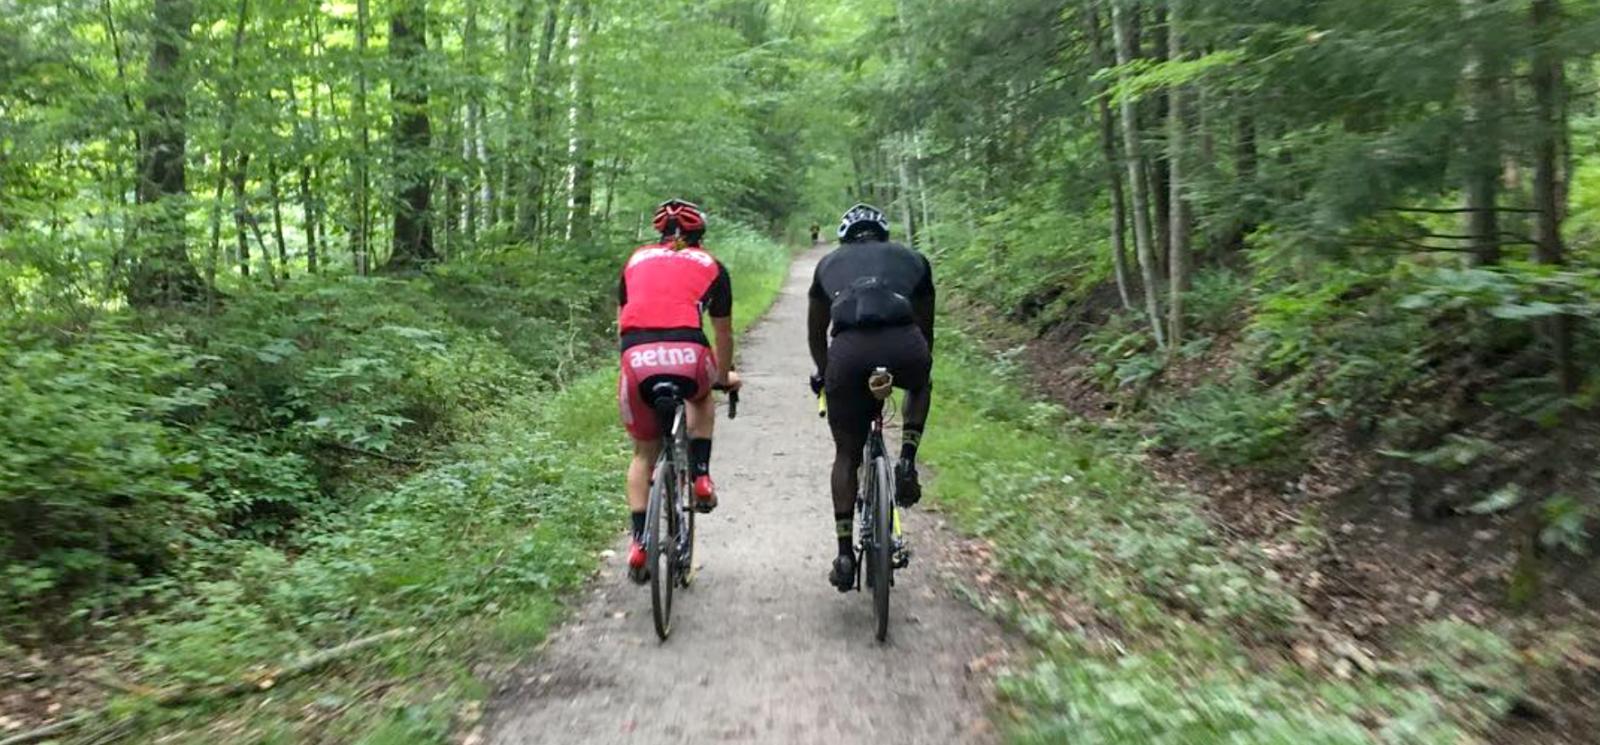 Dos ciclistas recorriendo un sendero en el bosque (Instagram@cyclesnack)